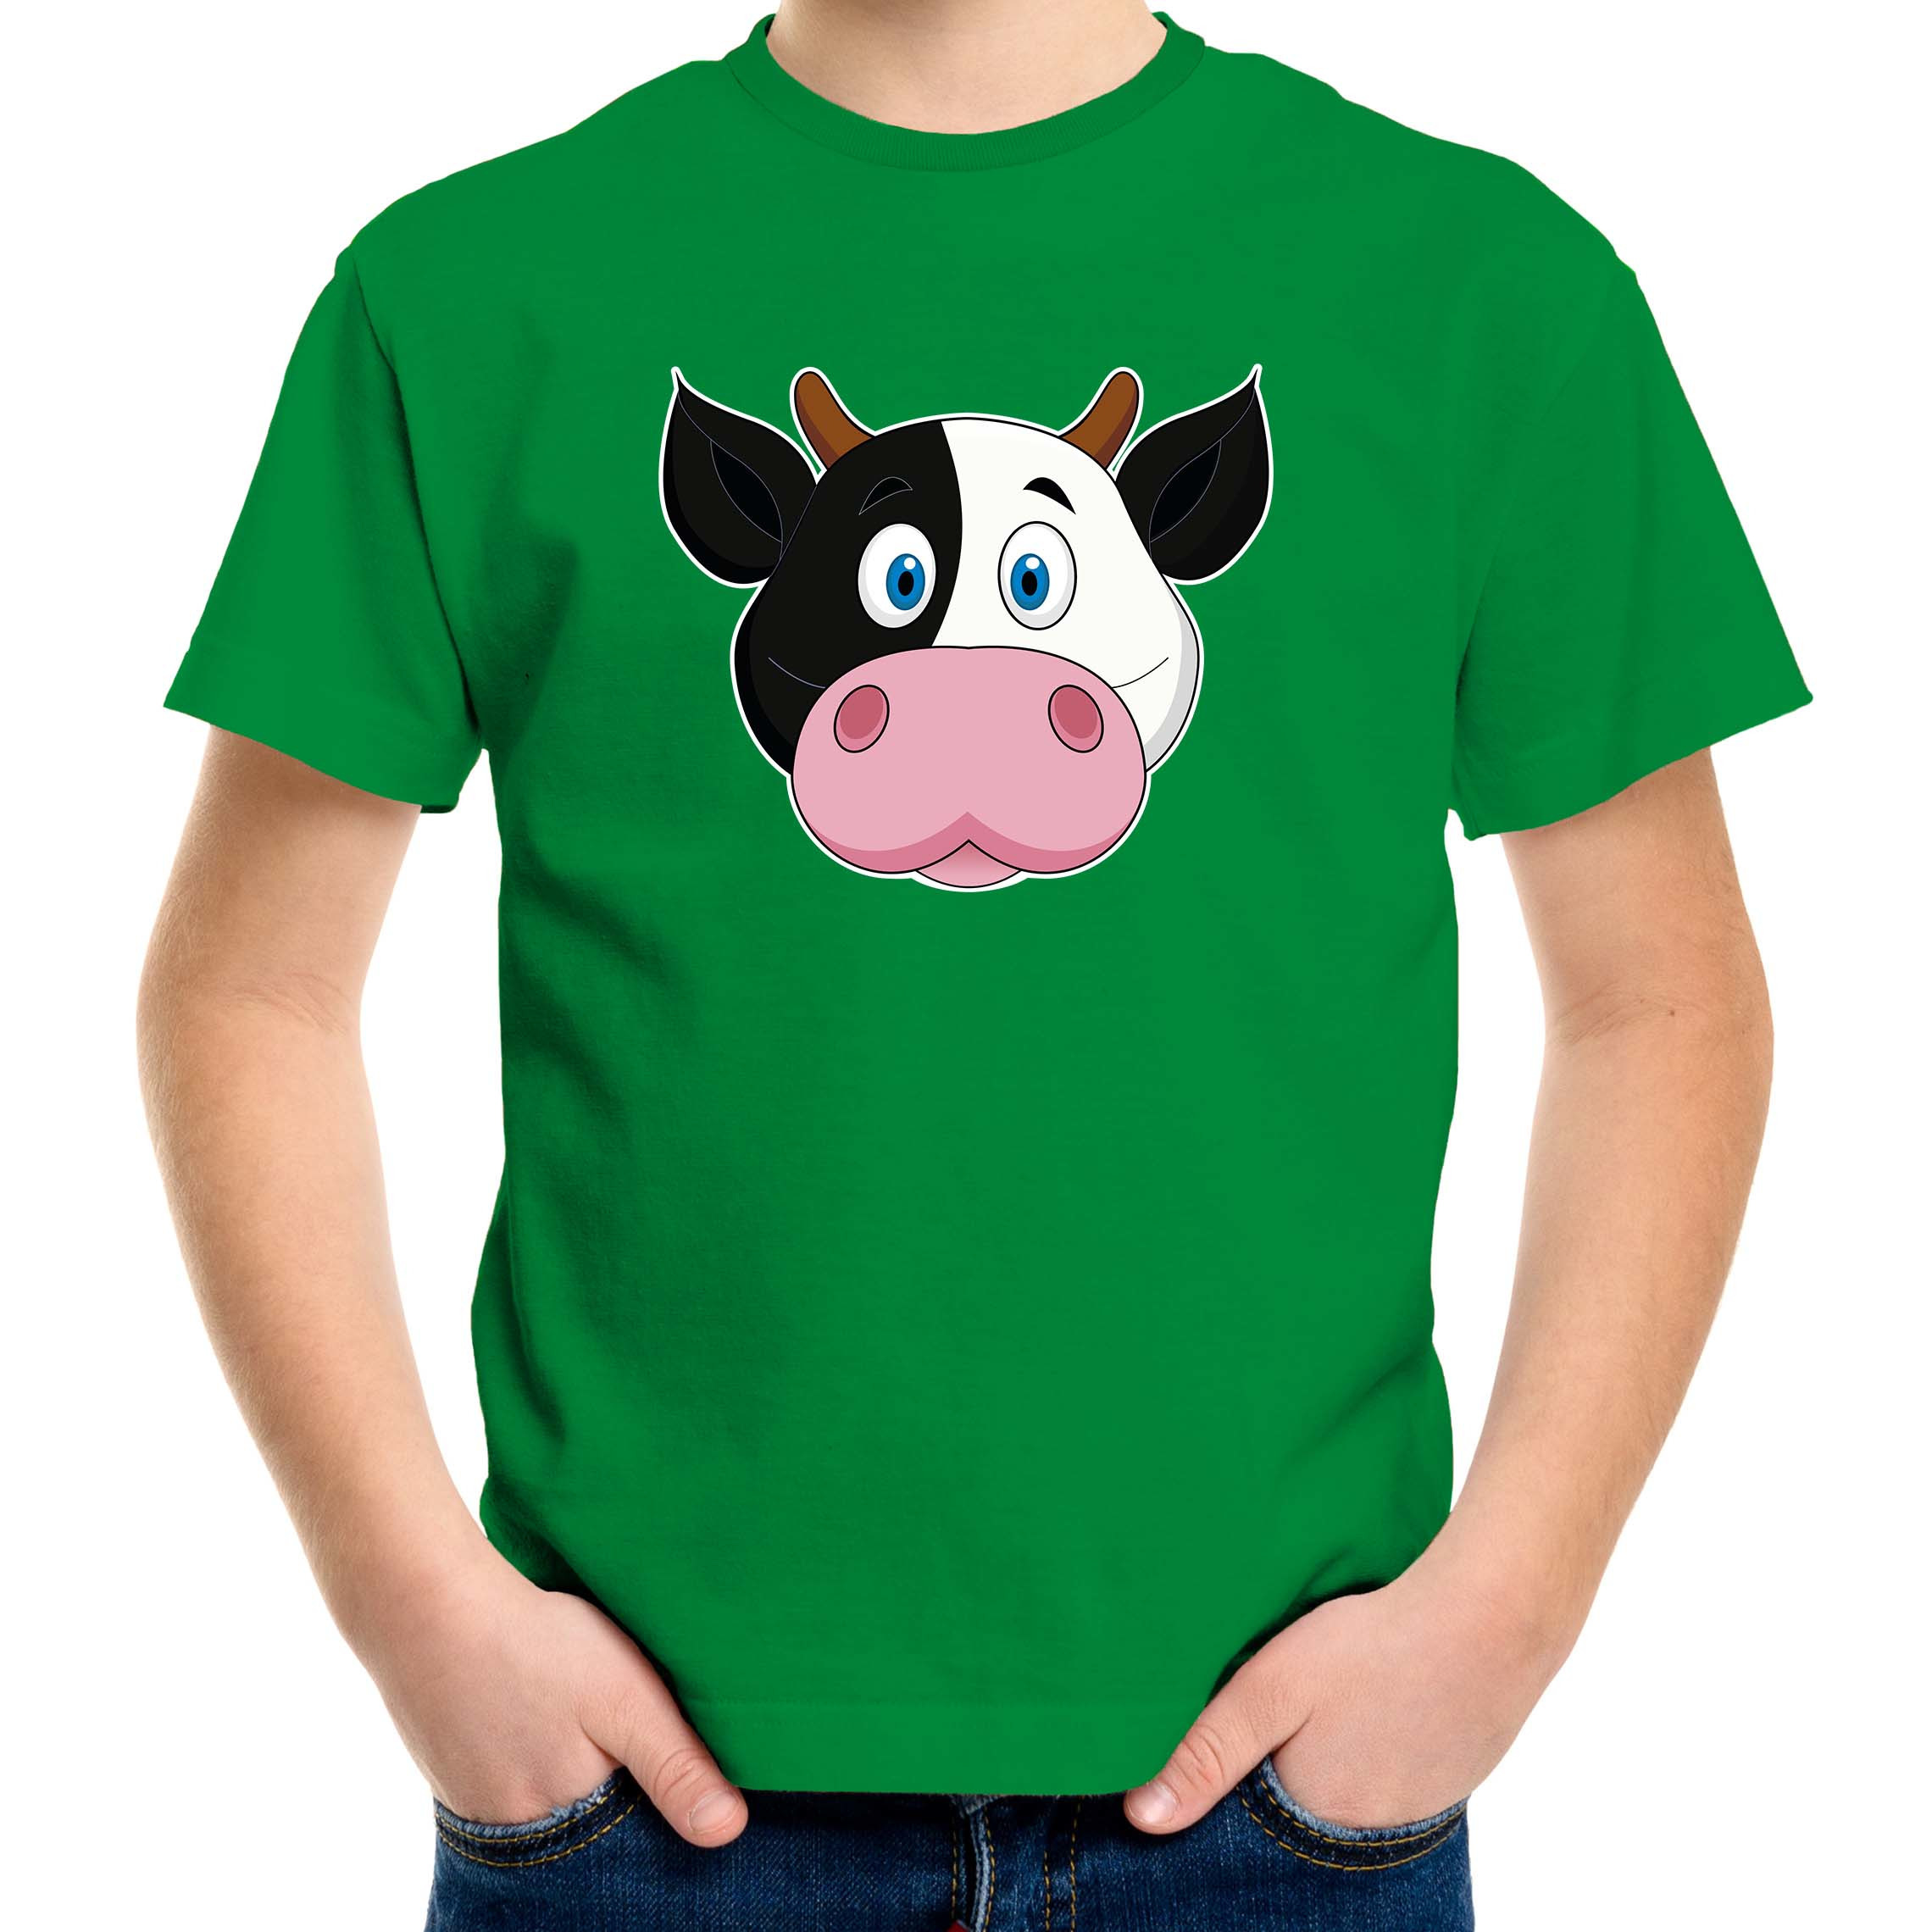 Cartoon koe t-shirt groen voor jongens en meisjes - Cartoon dieren t-shirts kinderen